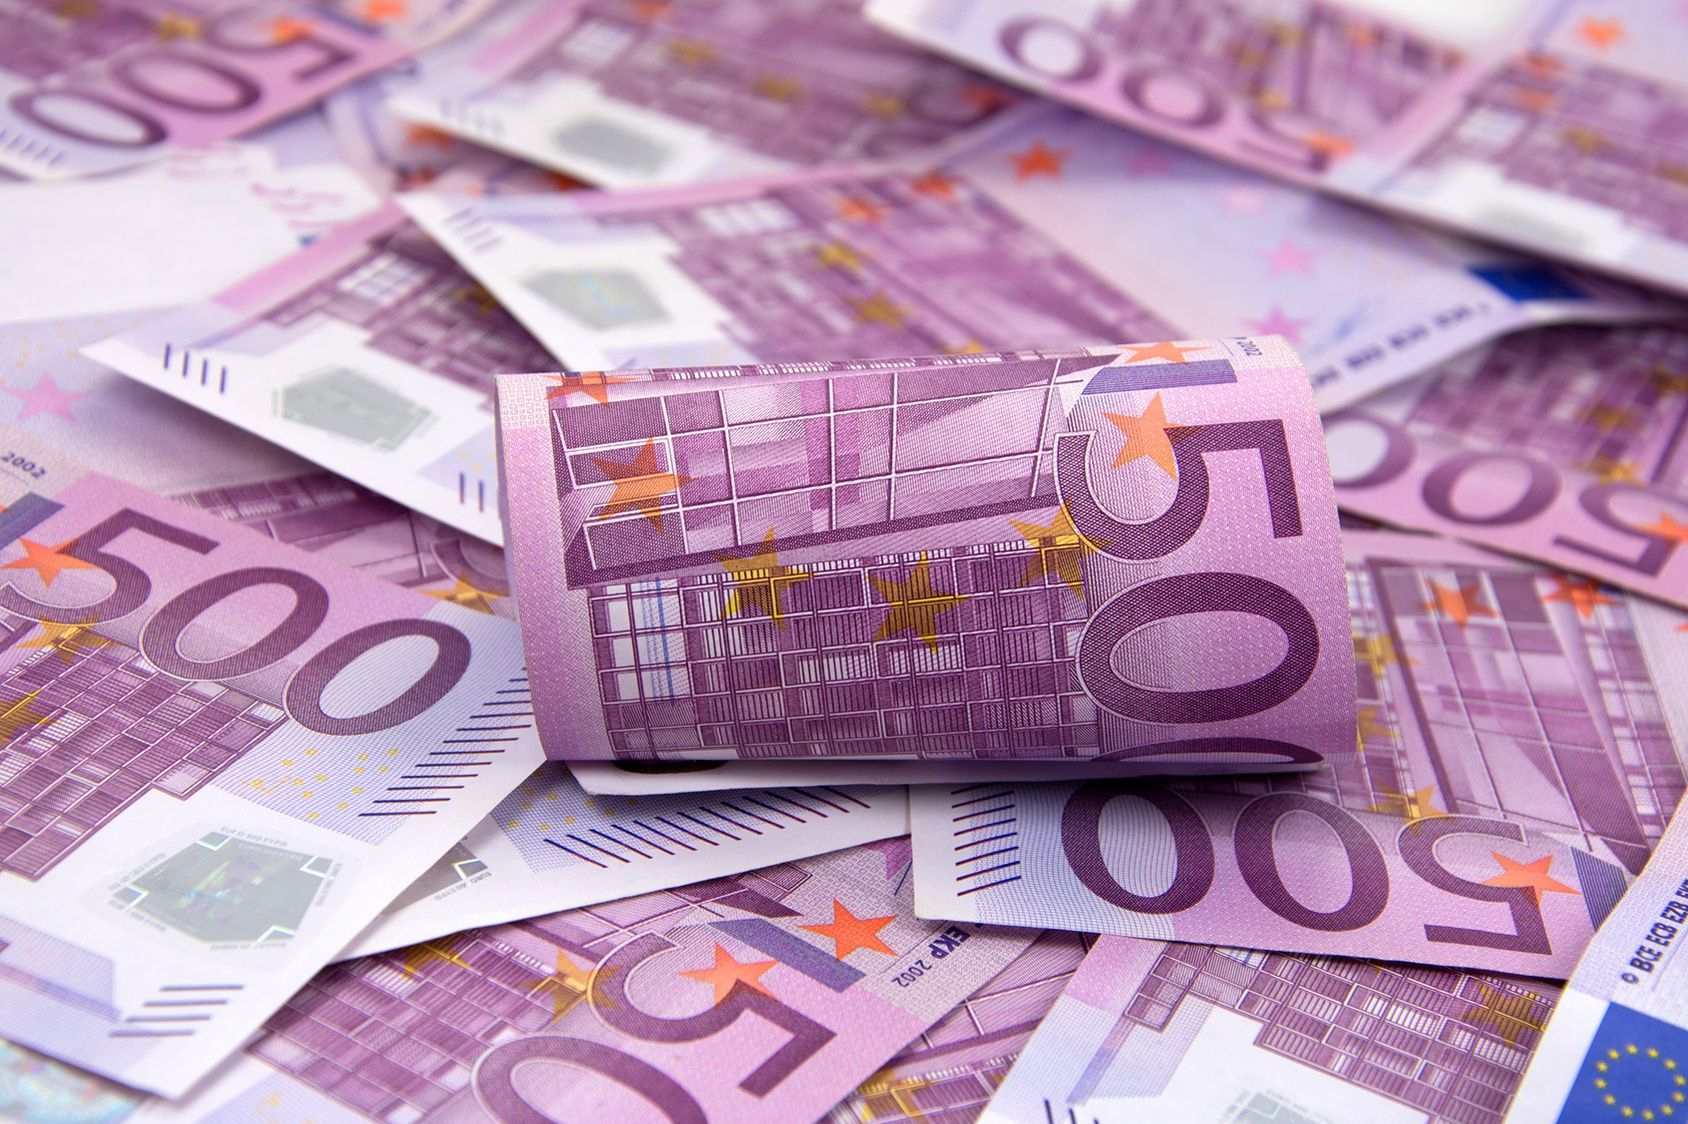 Billets Et Pièces En Euros À Imprimer - Primanyc destiné Billet De 5 Euros À Imprimer